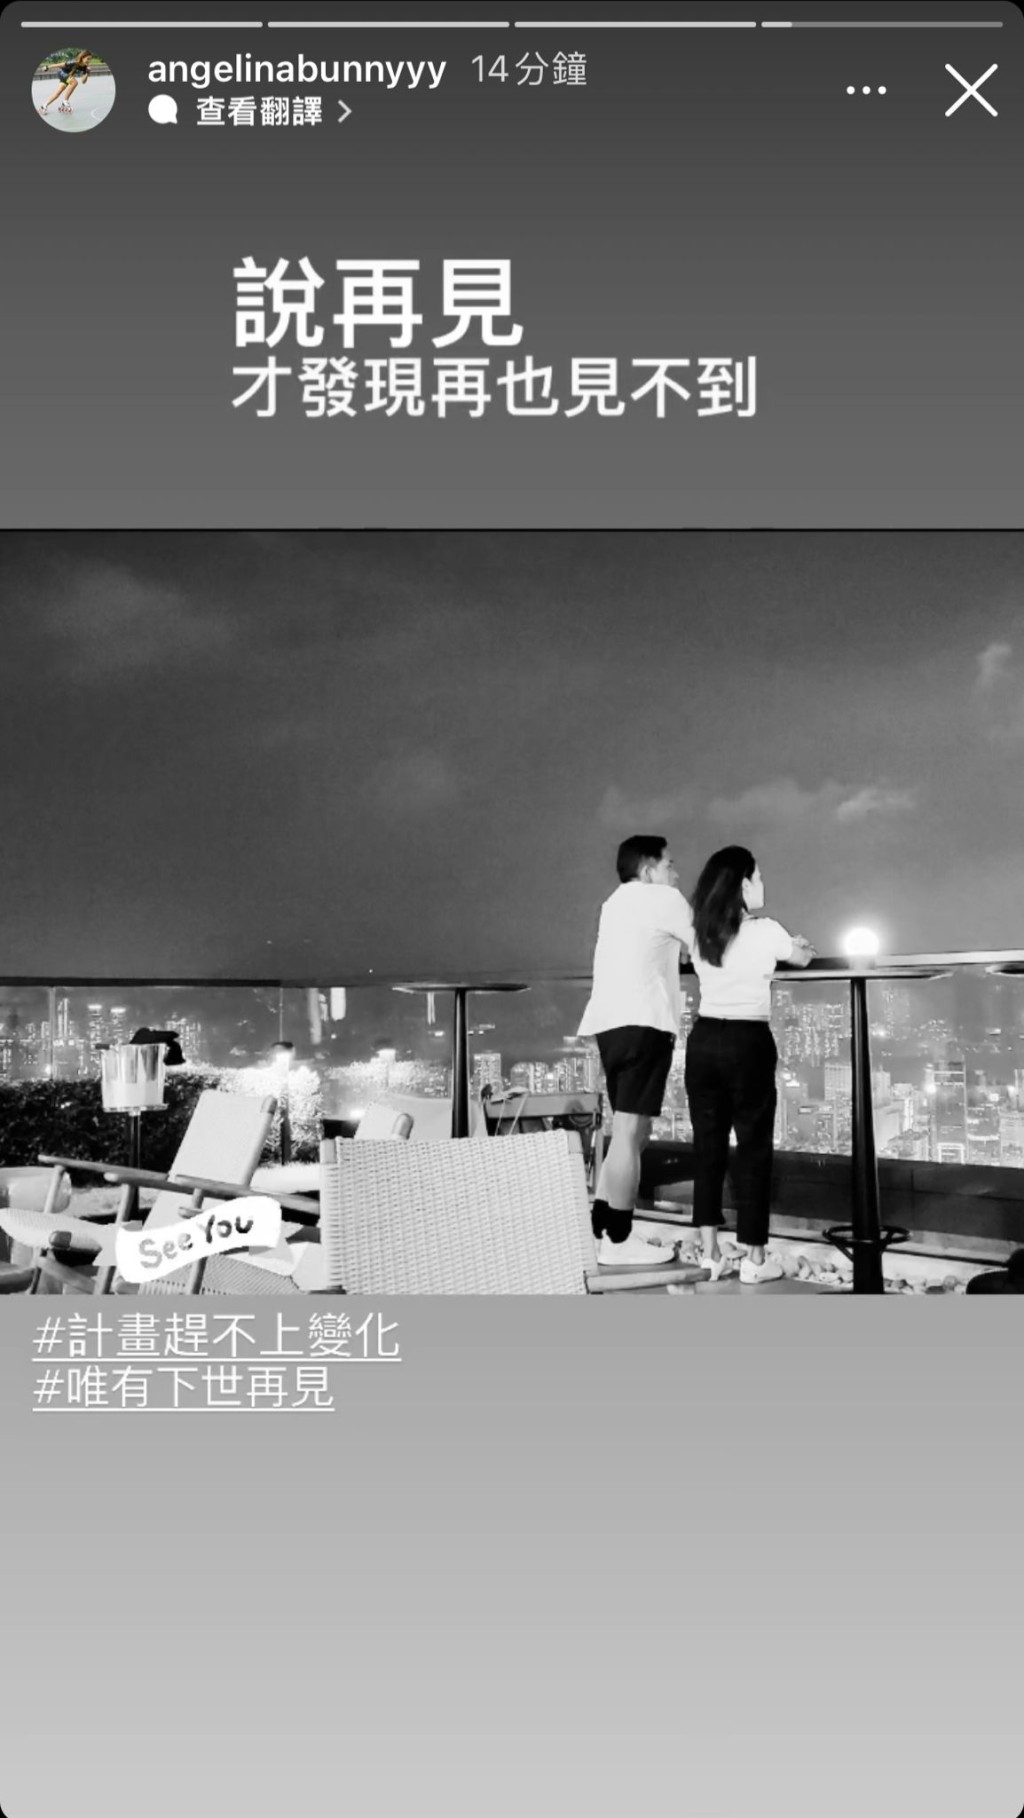 随后，王雁芝再分享一张二人的黑白背影照，她慨叹：「说再见才发现再也见不到 #计划赶不上变化 #惟有下世再见」